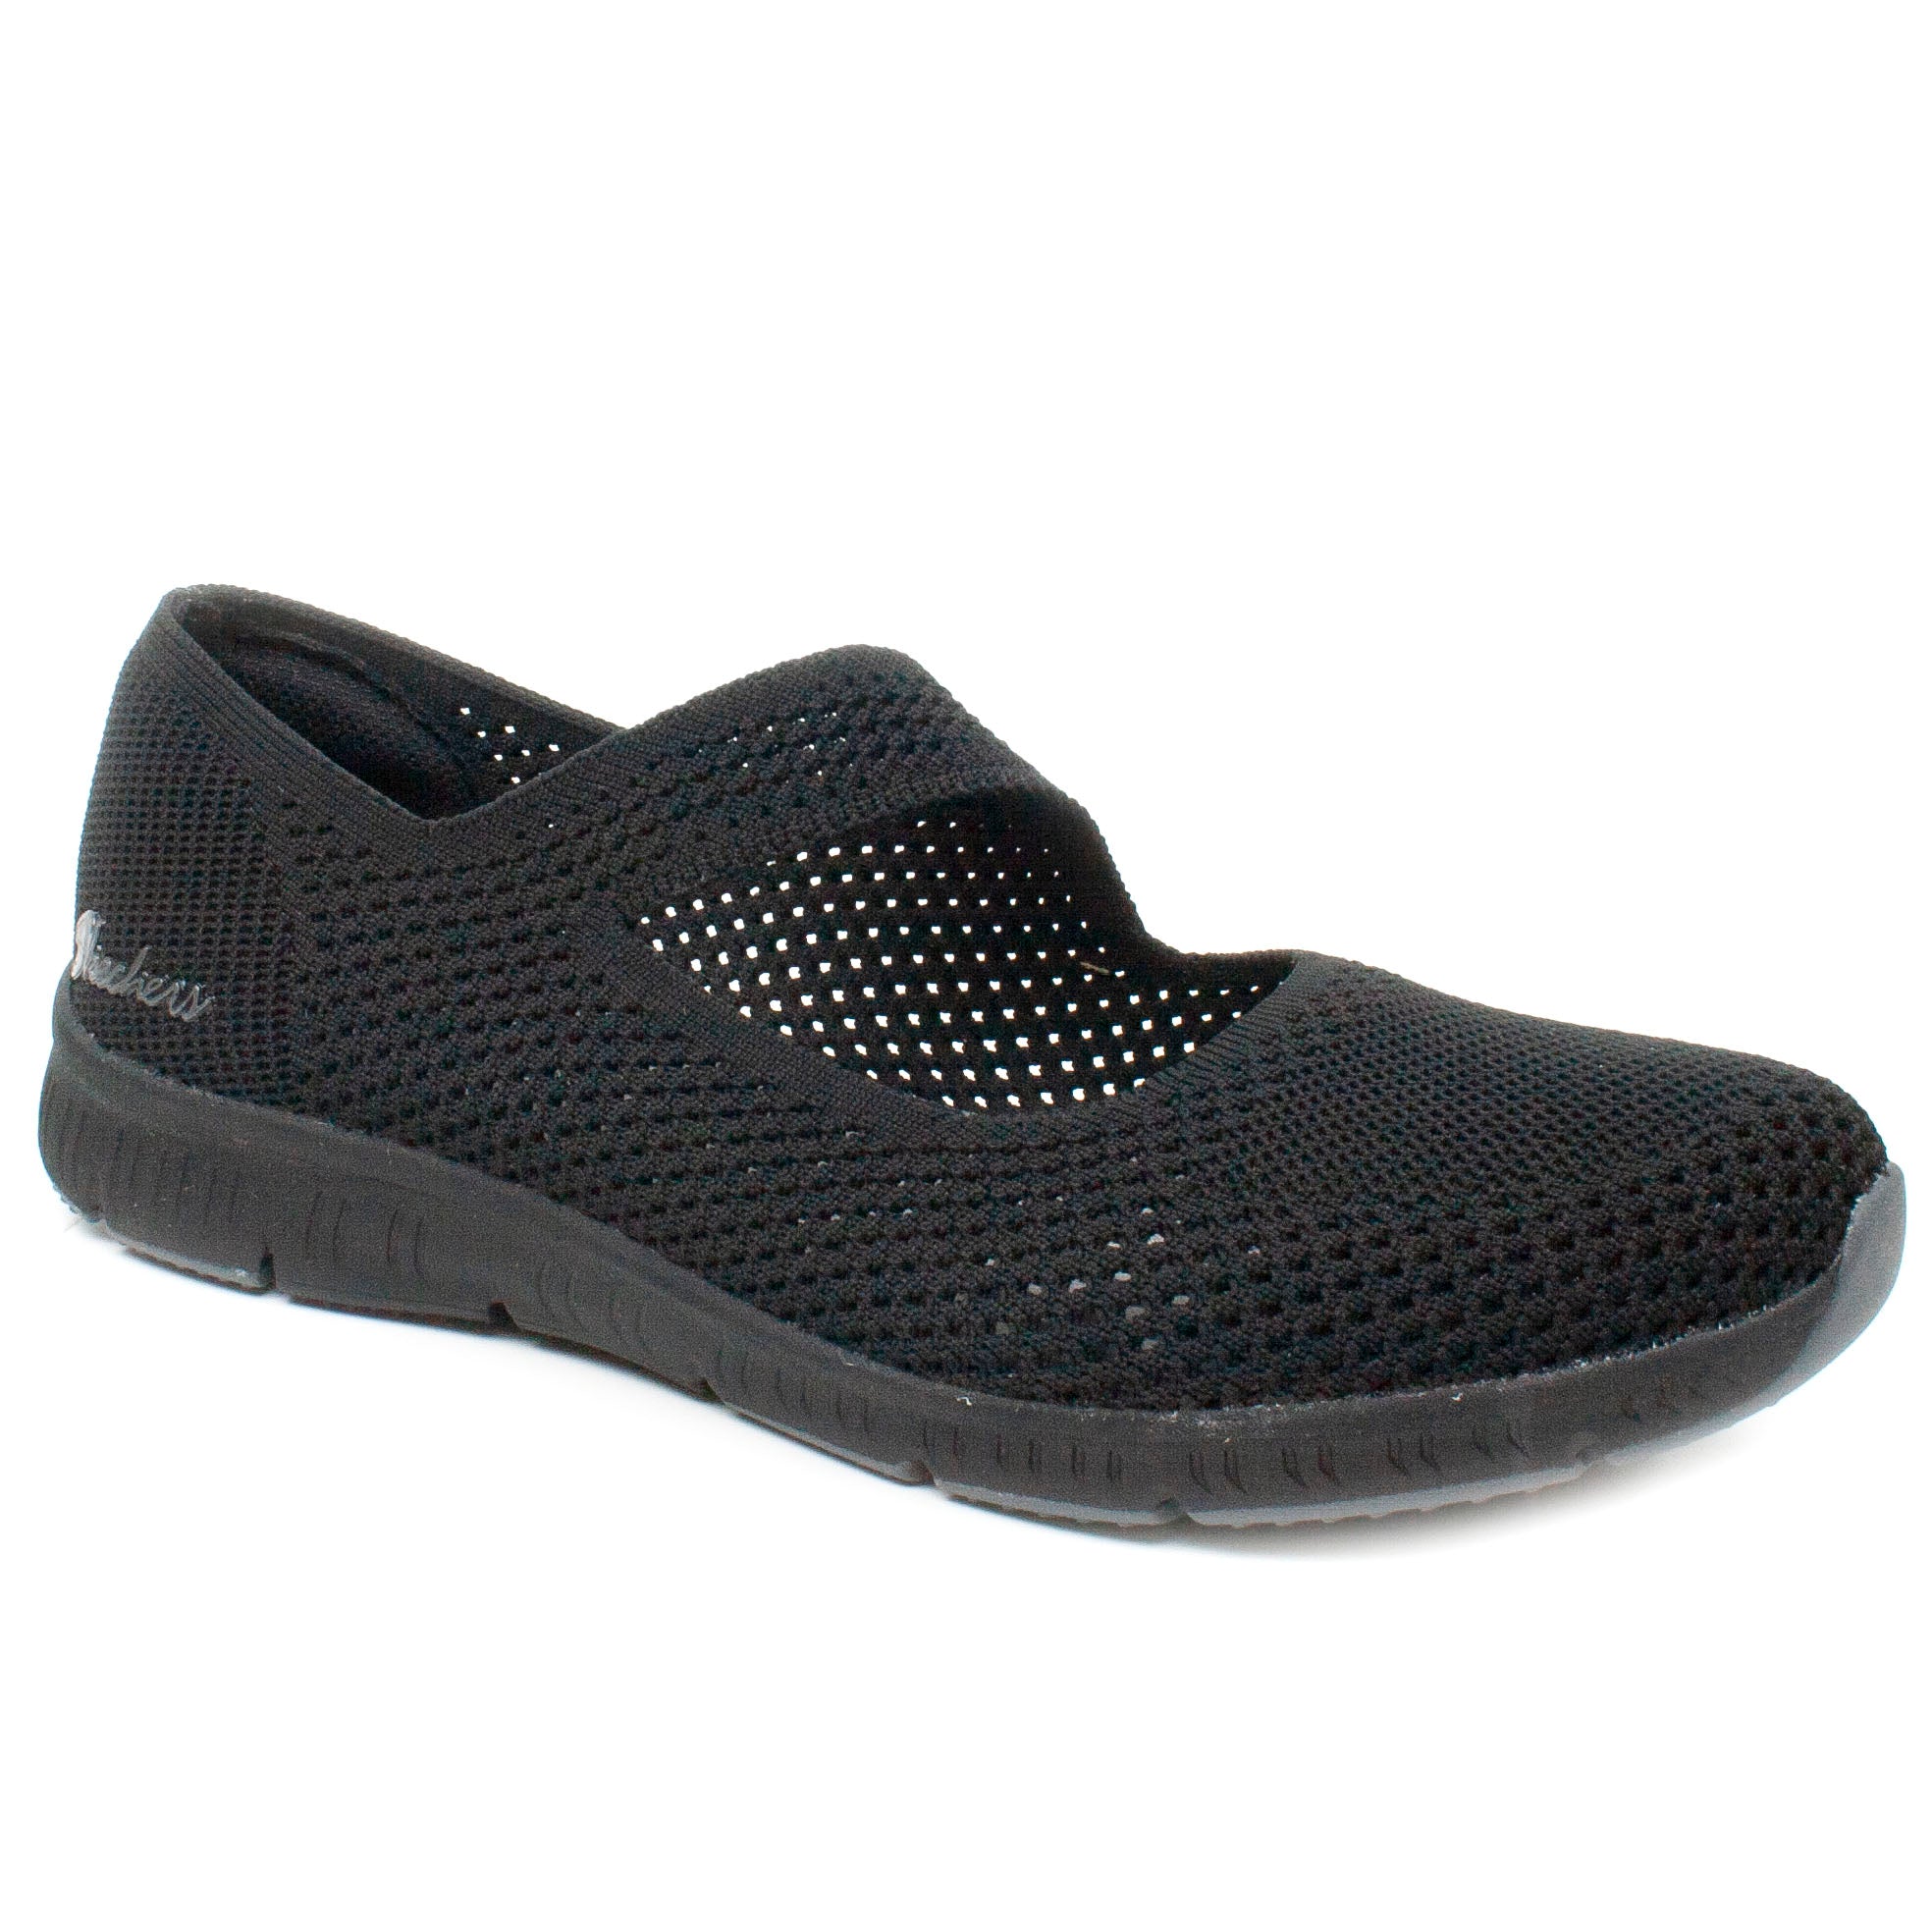 Skechers Pantofi dama perforati 100349 negru ID2523-NG